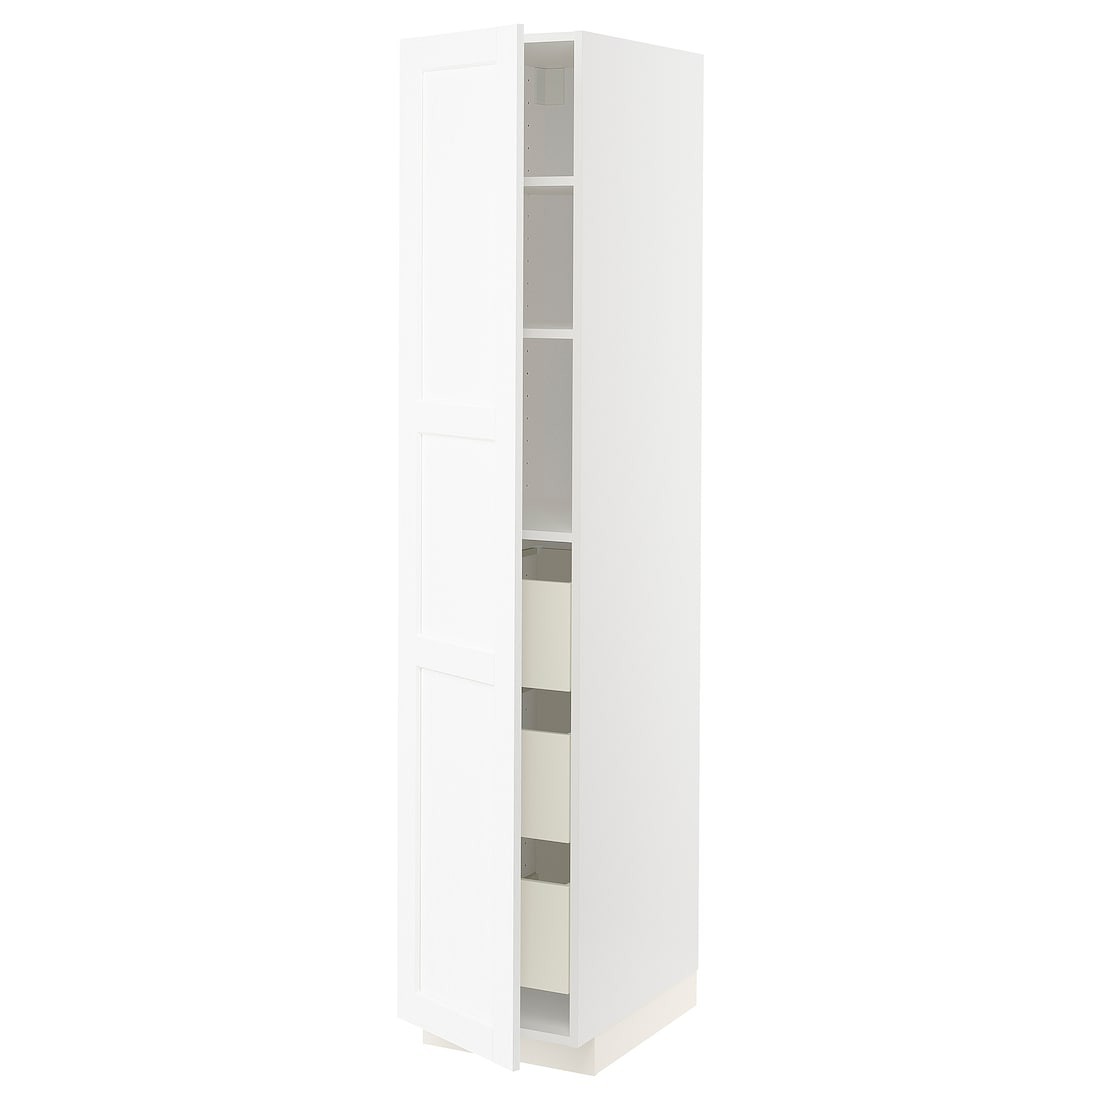 METOD МЕТОД / MAXIMERA МАКСИМЕРА Шкаф высокий с ящиками, белый Enköping / белый имитация дерева, 40x60x200 см